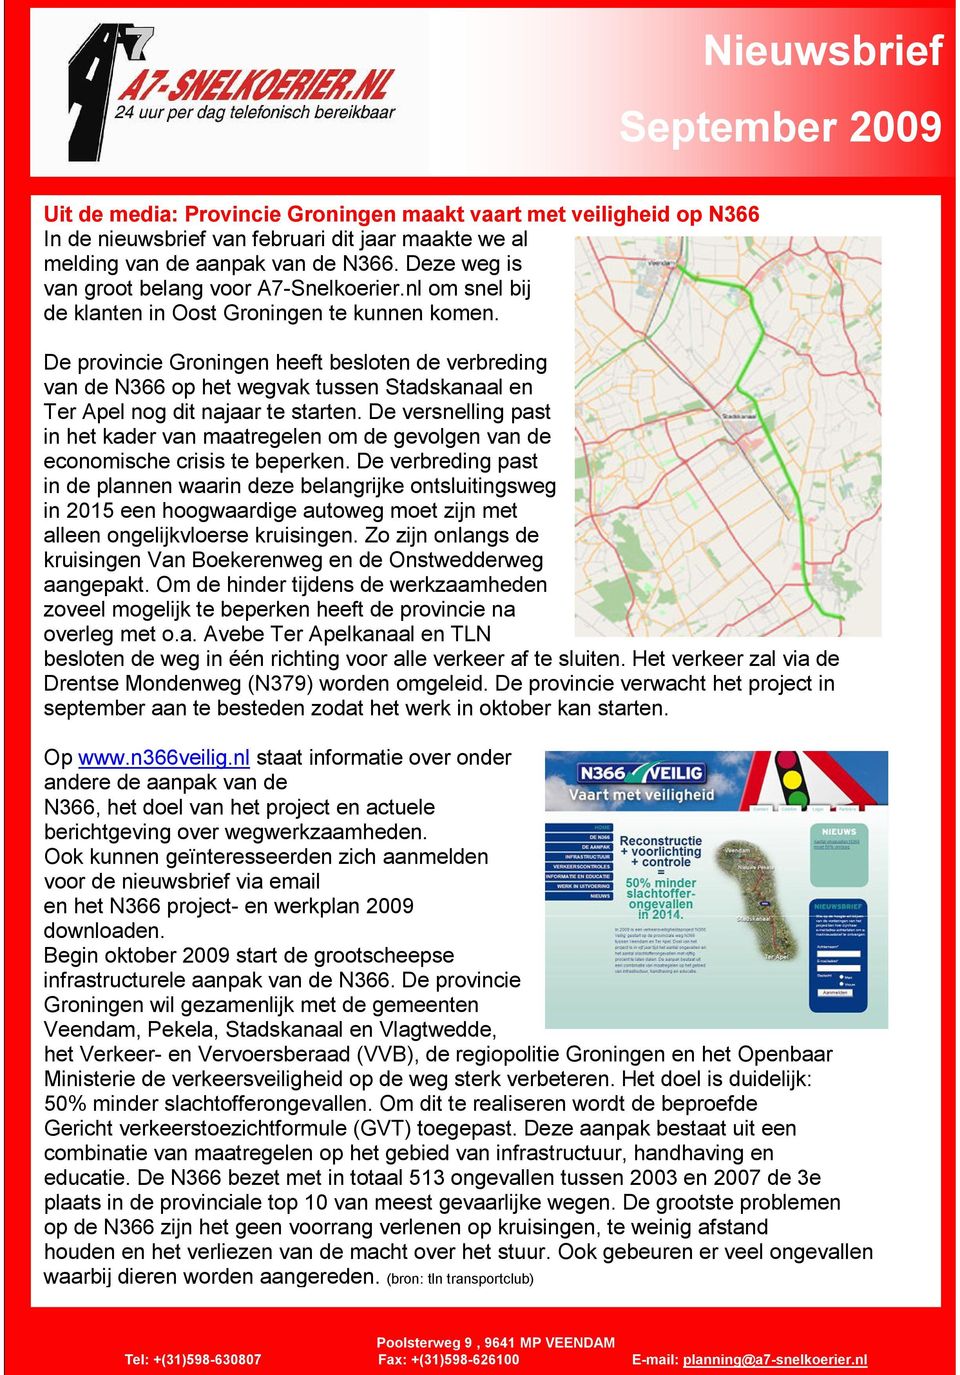 De provincie Groningen heeft besloten de verbreding van de N366 op het wegvak tussen Stadskanaal en Ter Apel nog dit najaar te starten.